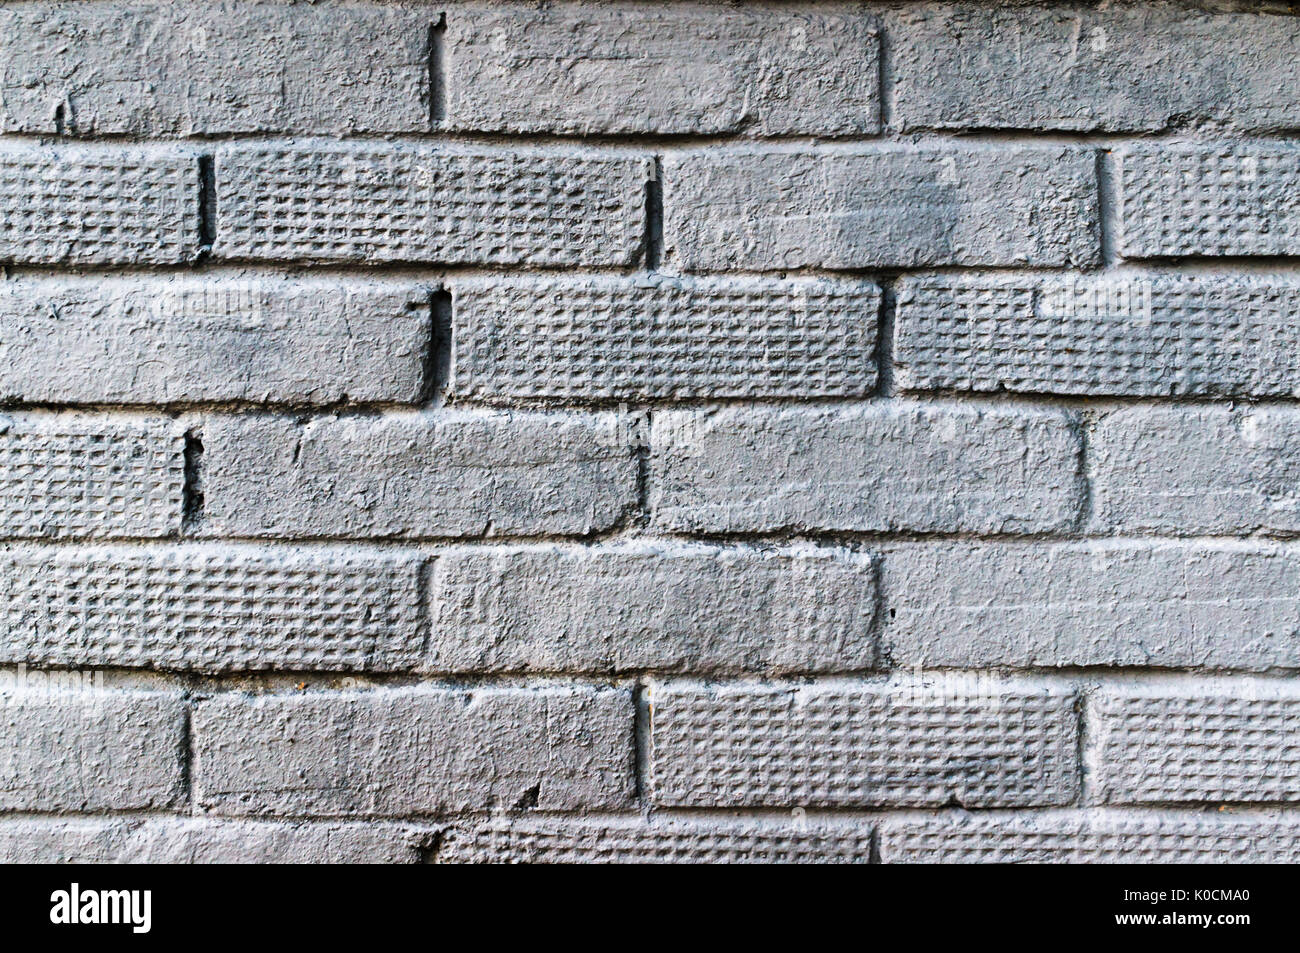 Vieux mur de briques peint en gris. La texture de la brique Banque D'Images